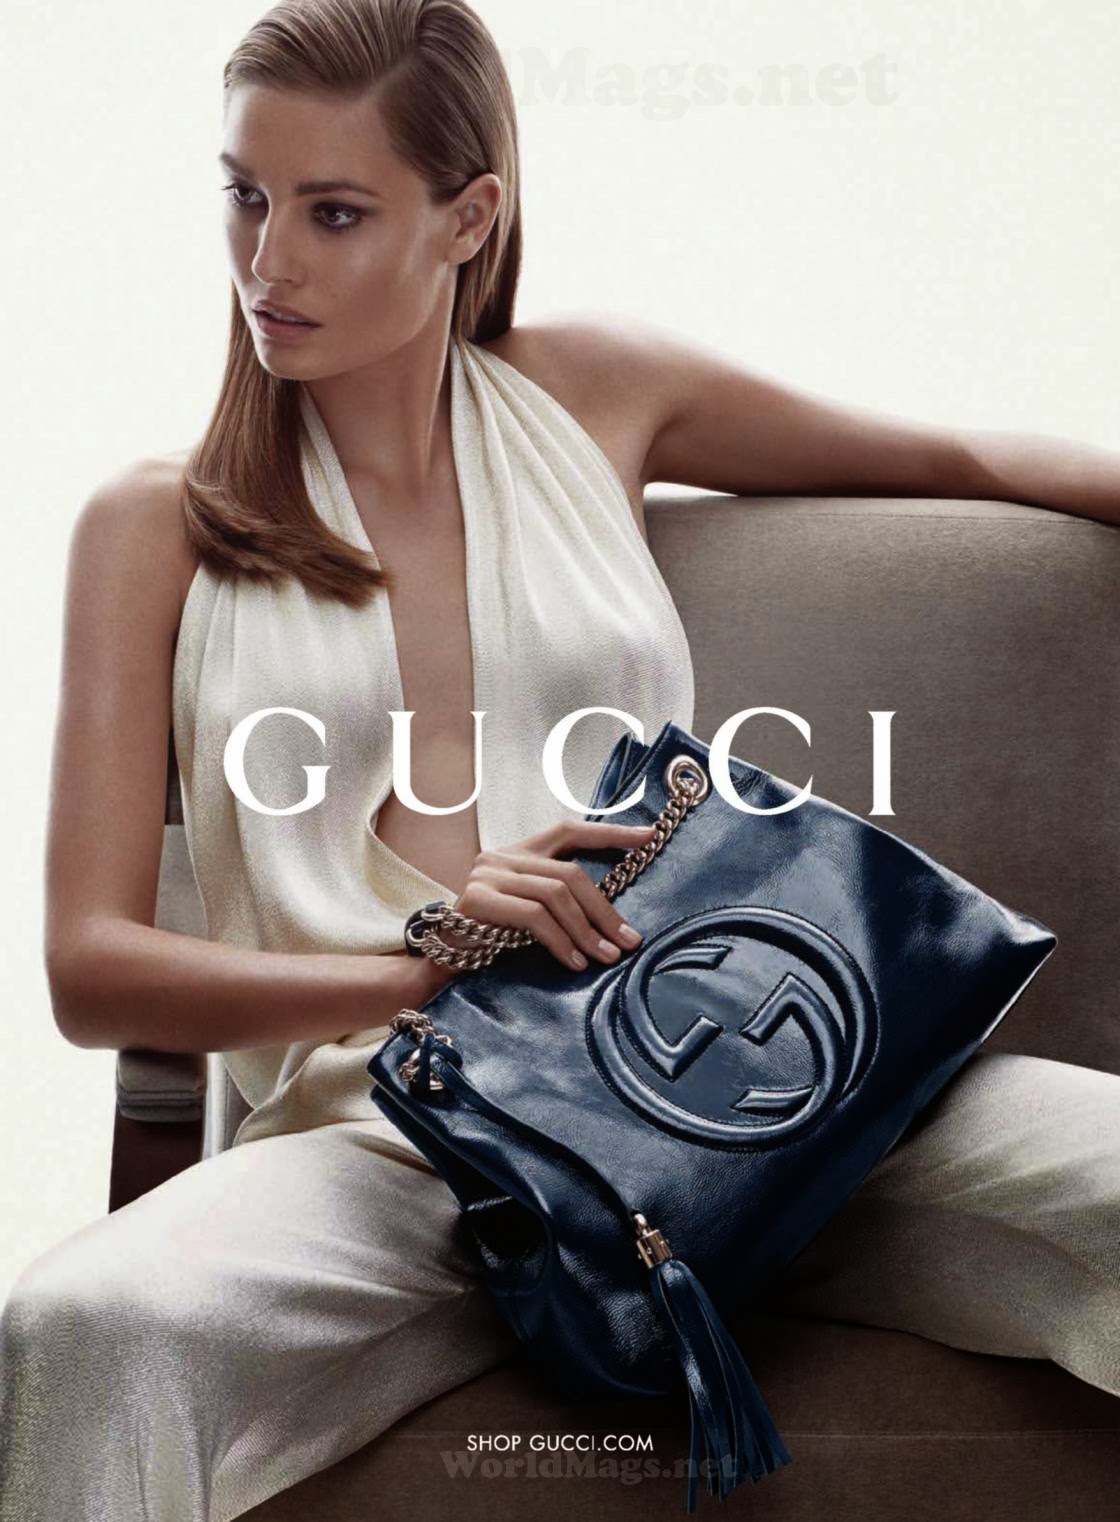 Resort / Cruise campaigns 2014: Gucci accessories & Gucci Cruise